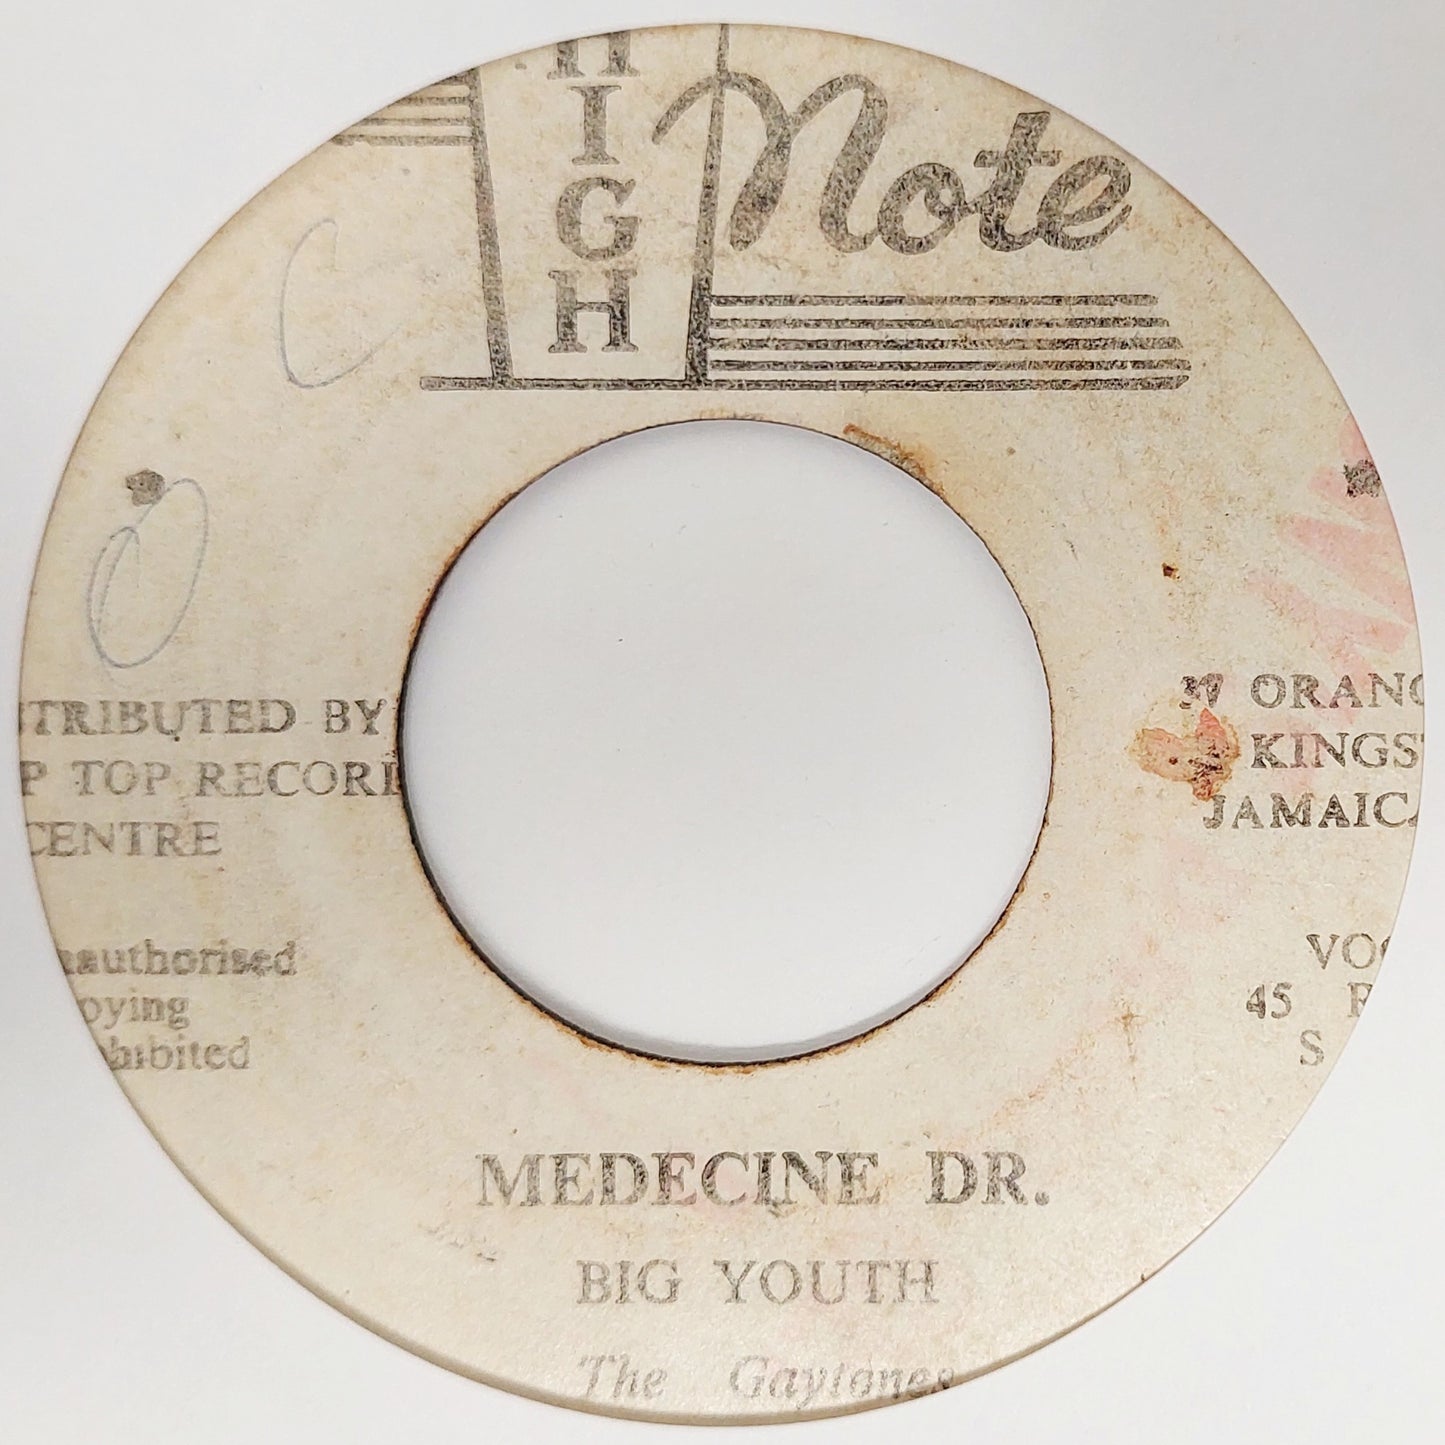 Big Youth - Medecine Dr.